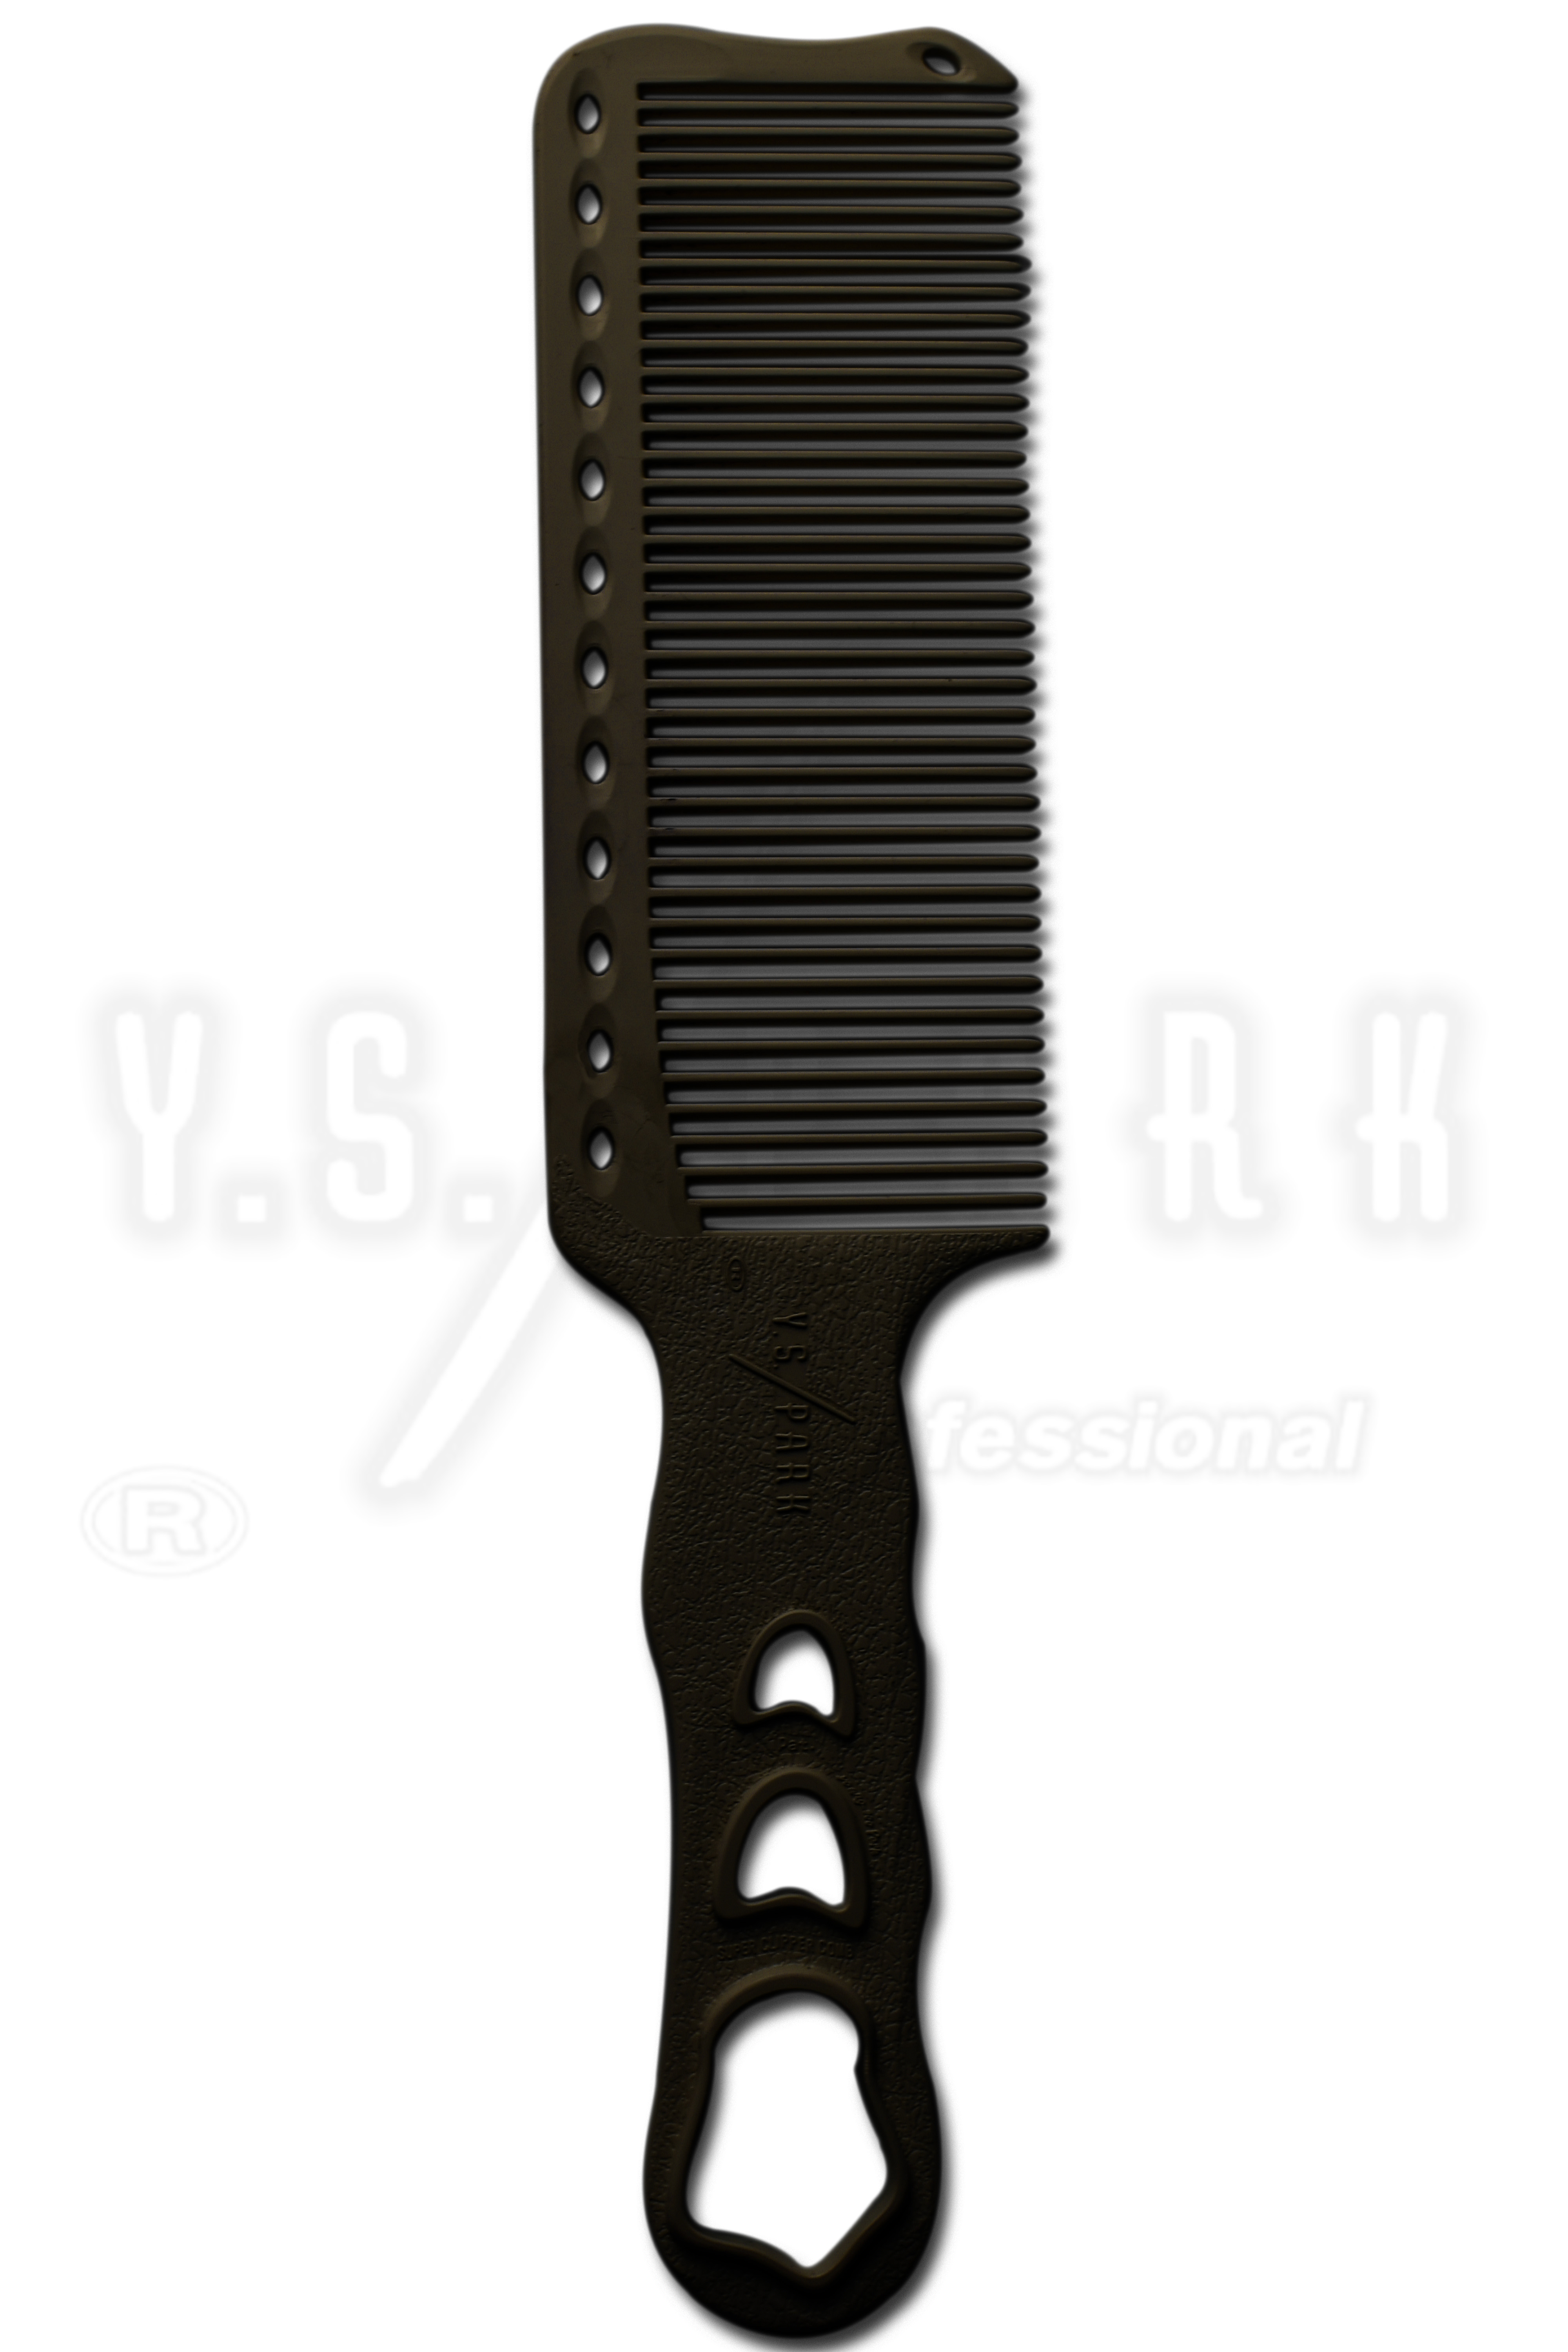 Peigne tondeuse YS PARK 282, Osaka, fournisseur de ciseaux de coiffure, accessoires, ciseaux japonais, coiffure pour les coiffeurs professionnels...